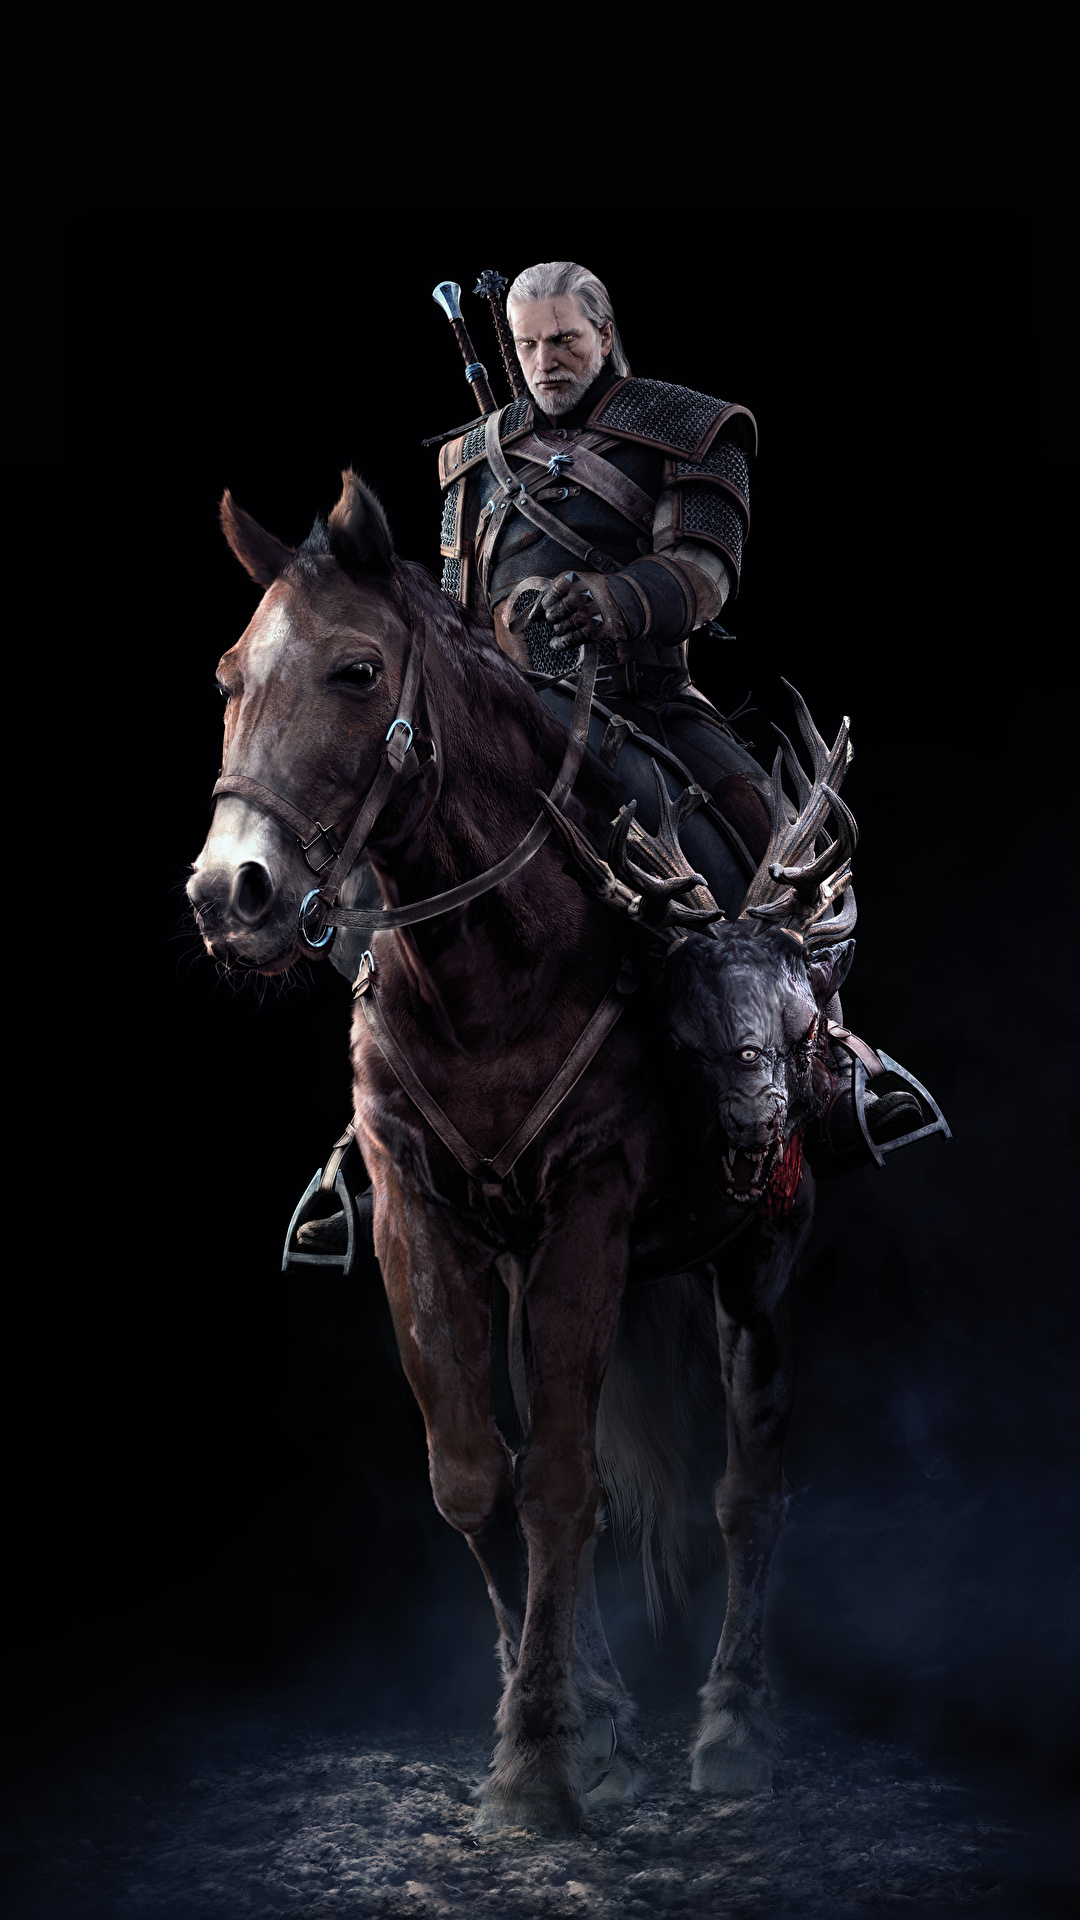 Papeis de parede 1080x1920 The Witcher 3: Wild Hunt Geralt de Rívia Cavalo  Jogos 3D Gráfica baixar imagens